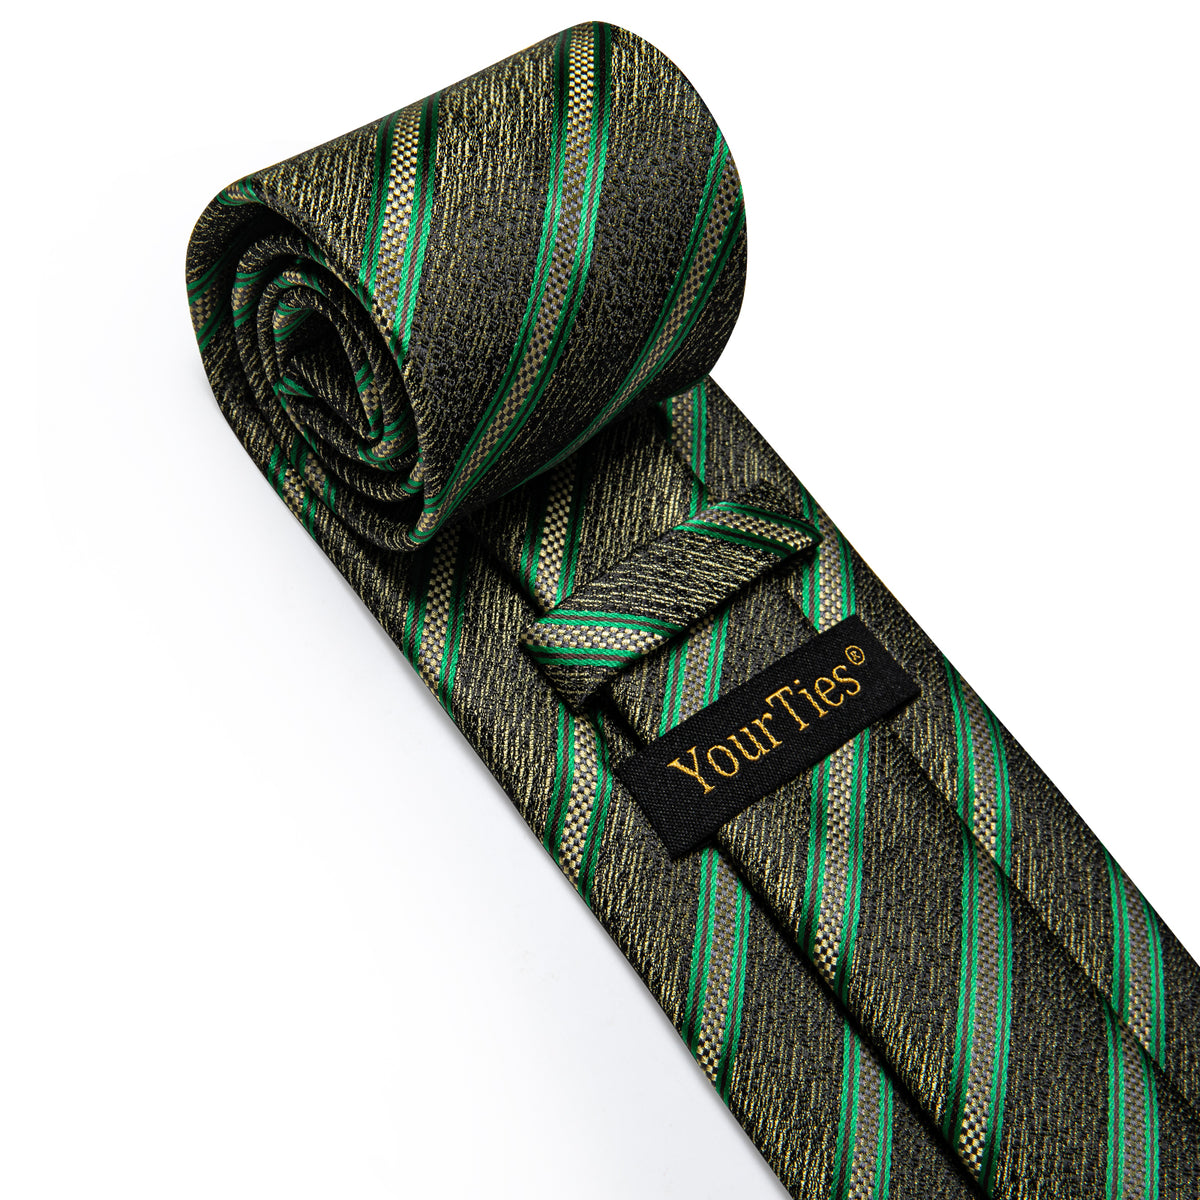 Green Yellow Striped Men's Necktie Pocket Square Cufflinks Set